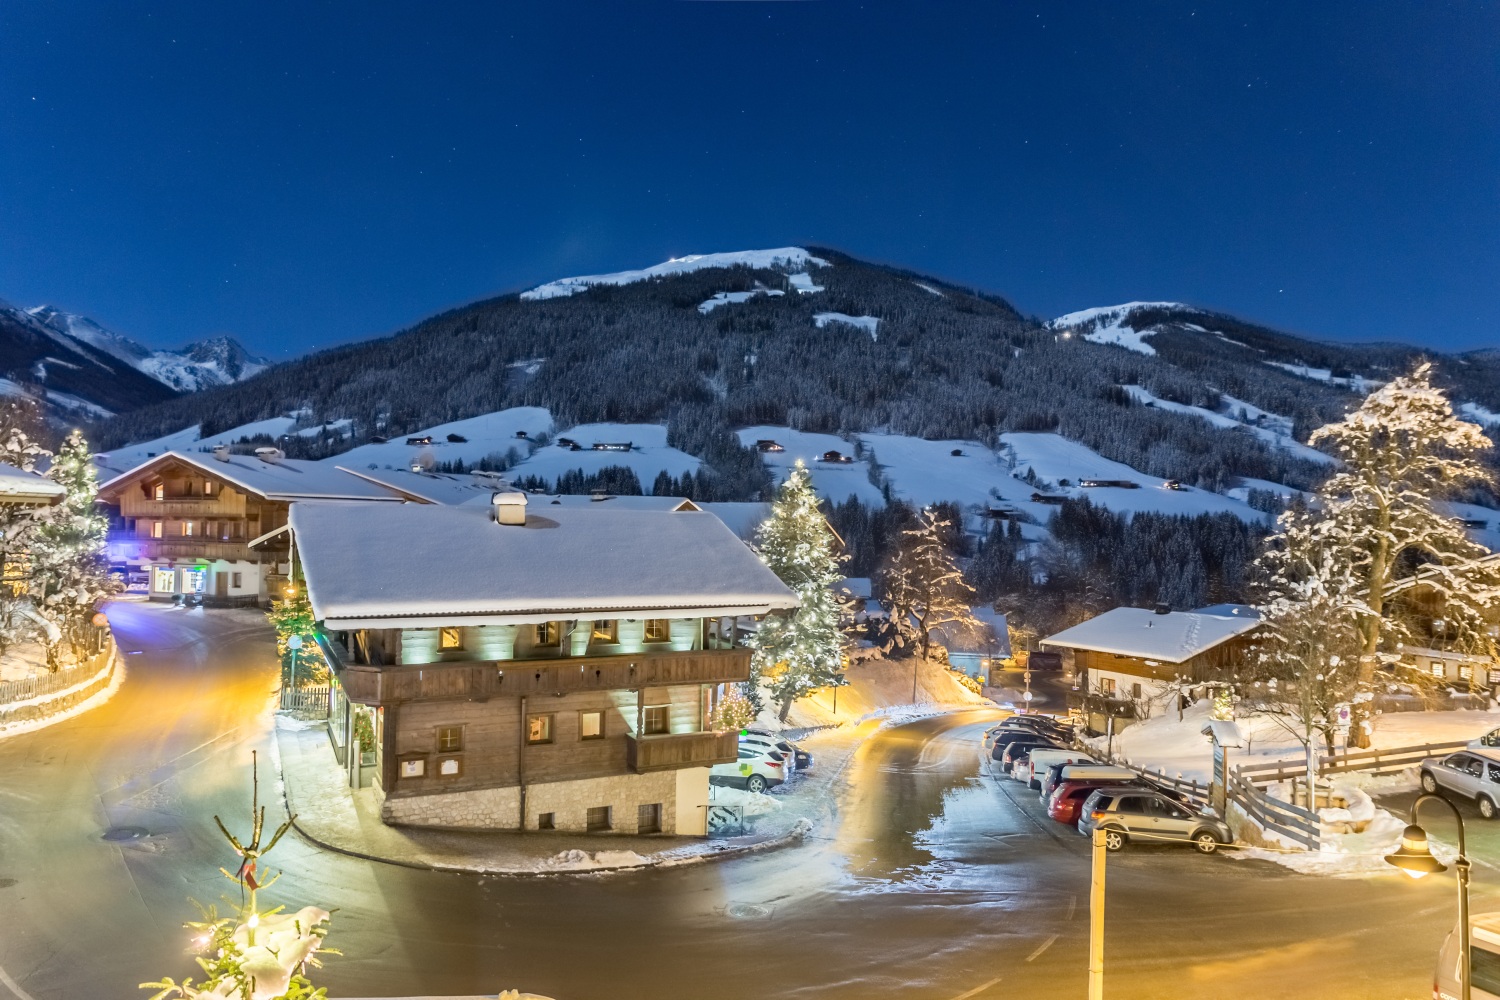 Station de ski d'Alpbach, Autriche CRÉDIT iStock